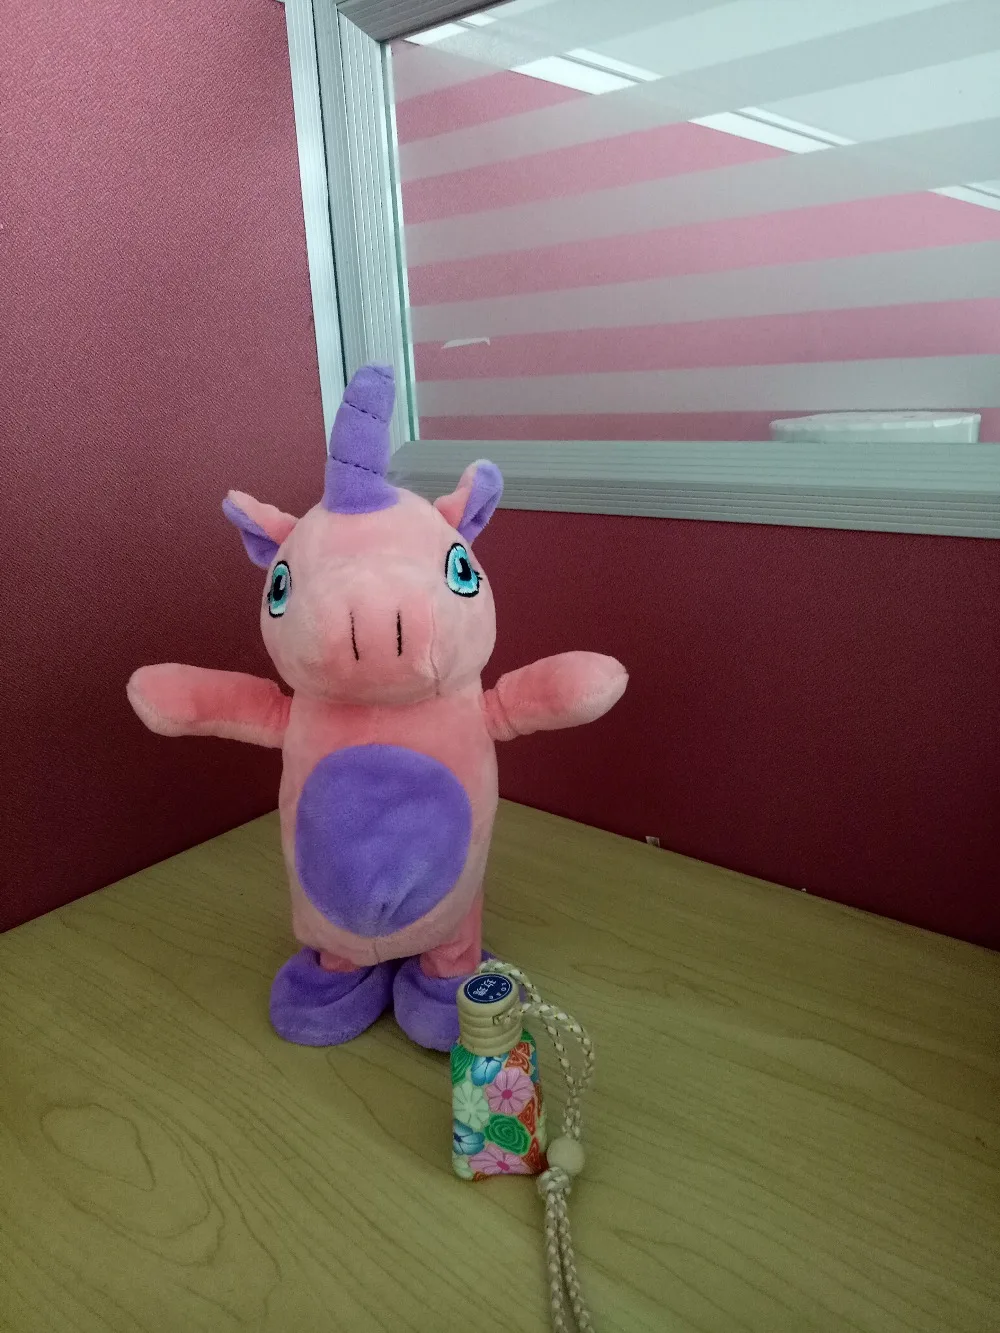 35 см Прекрасный Электрический прогулочный Единорог, плюшевая игрушка, мягкая плюшевая игрушка в виде животного, Электронная кукла в виде единорога, поет песнь для детей, подарки на день рождения - Цвет: pink